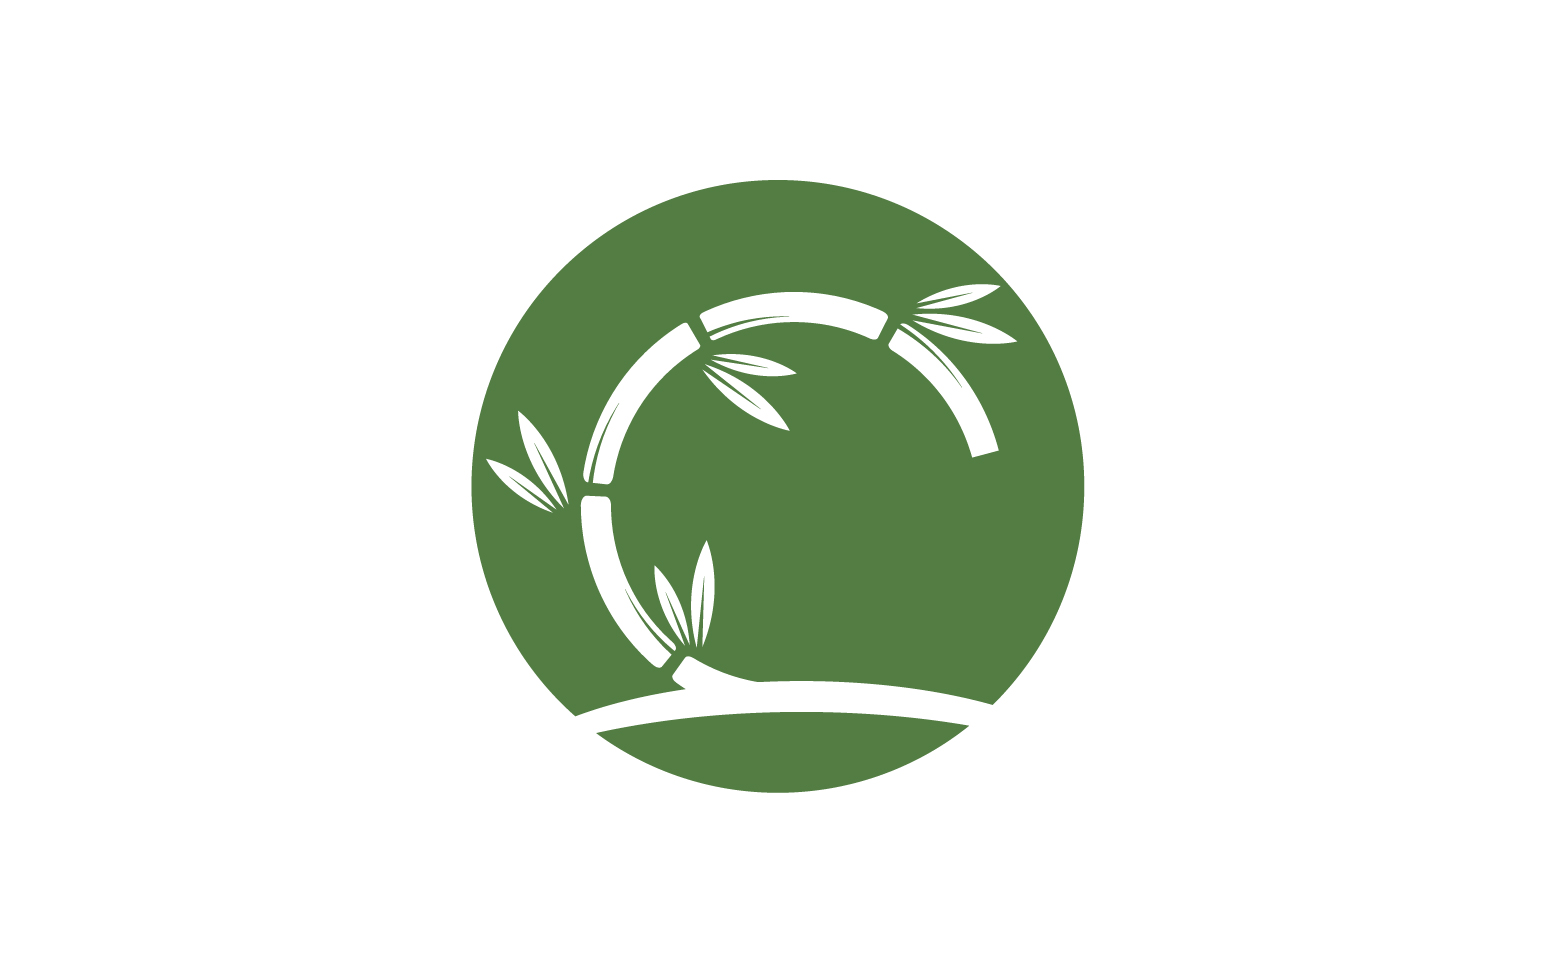 Bamboo tree logo vector v.26